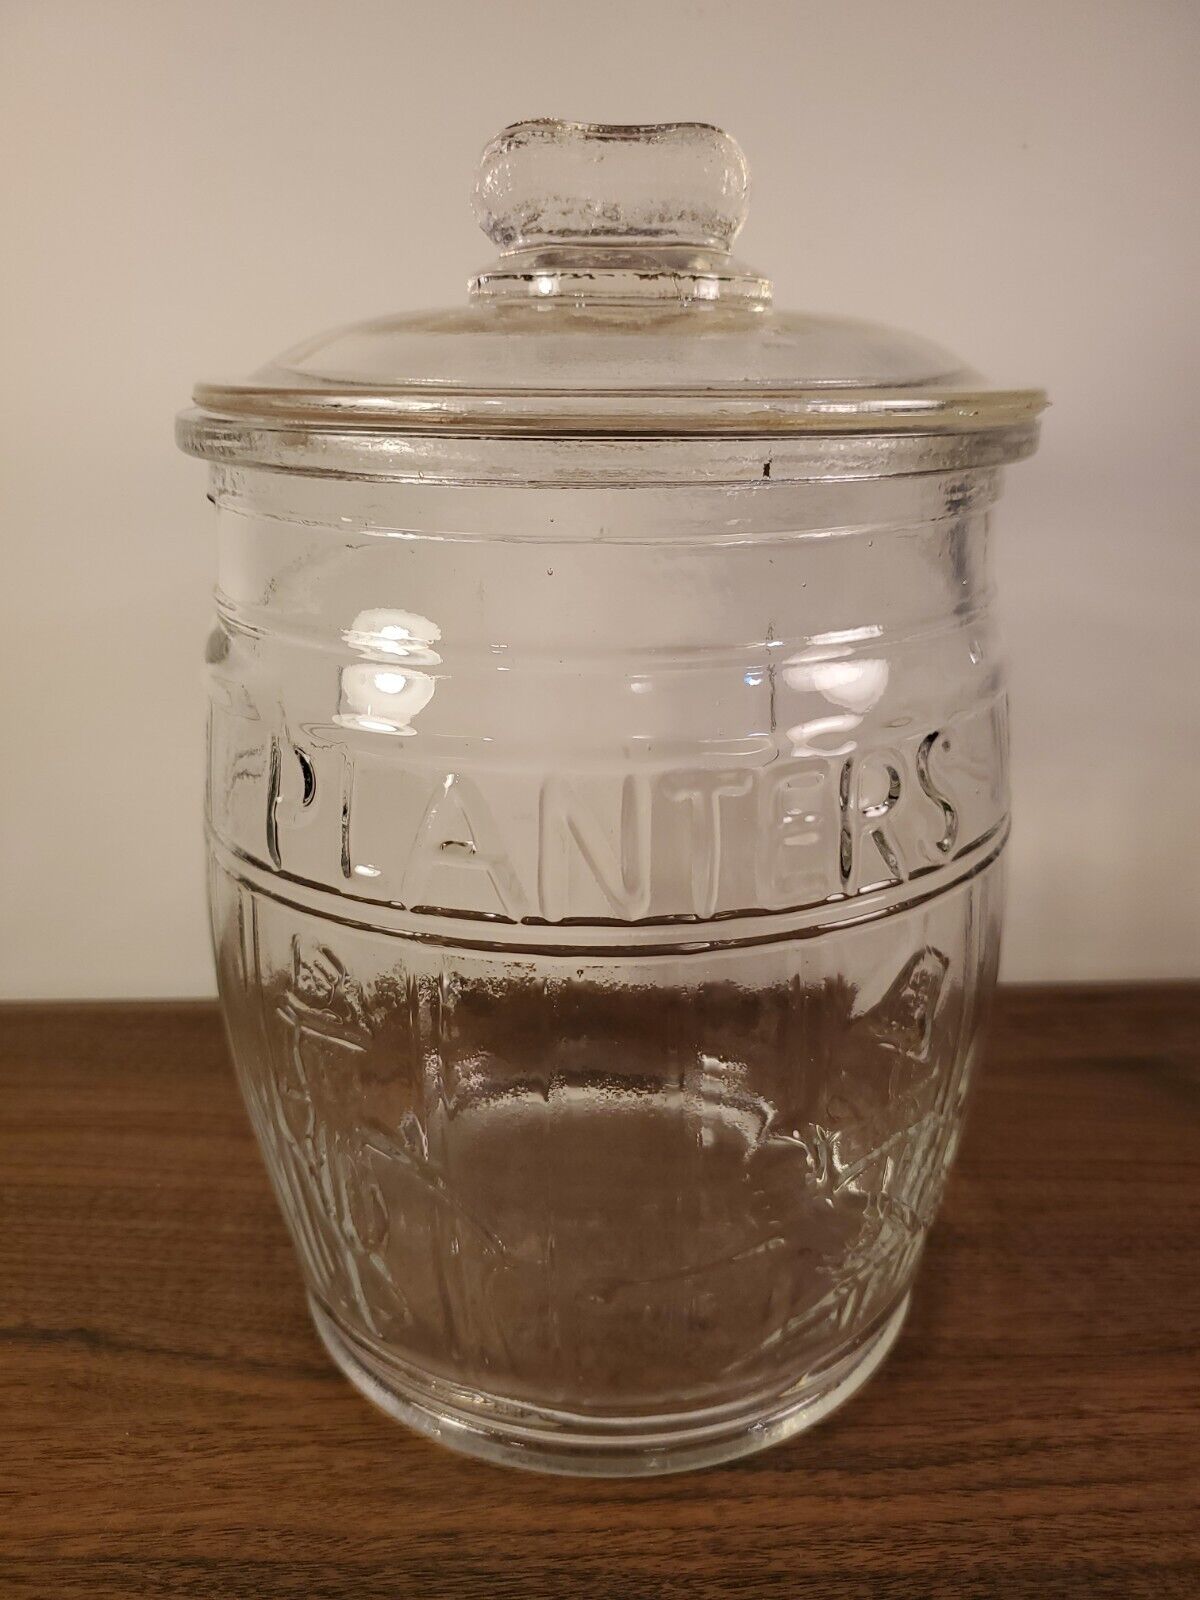 Vintage Planters Mr Peanut Embossed Glass Counter Storage Jar Peanut Handle Lid